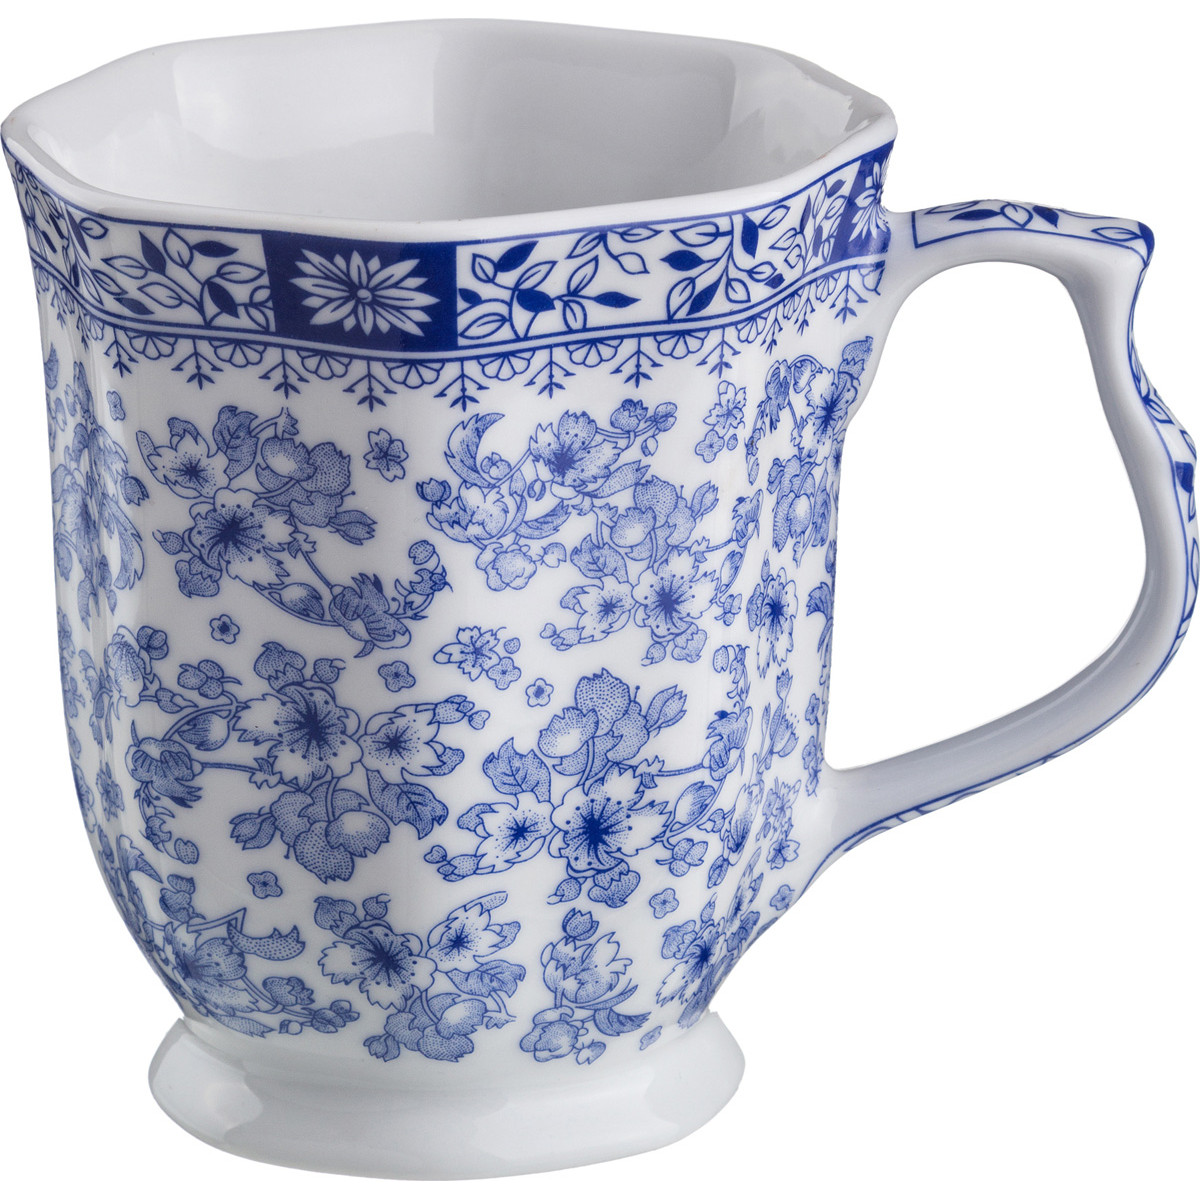 Cup 19. Royal-Porcelain чашка Гжель. Royal Porcelain Кружка. Лефард чашка 400 мл. Фарфор Royal Porcelain.